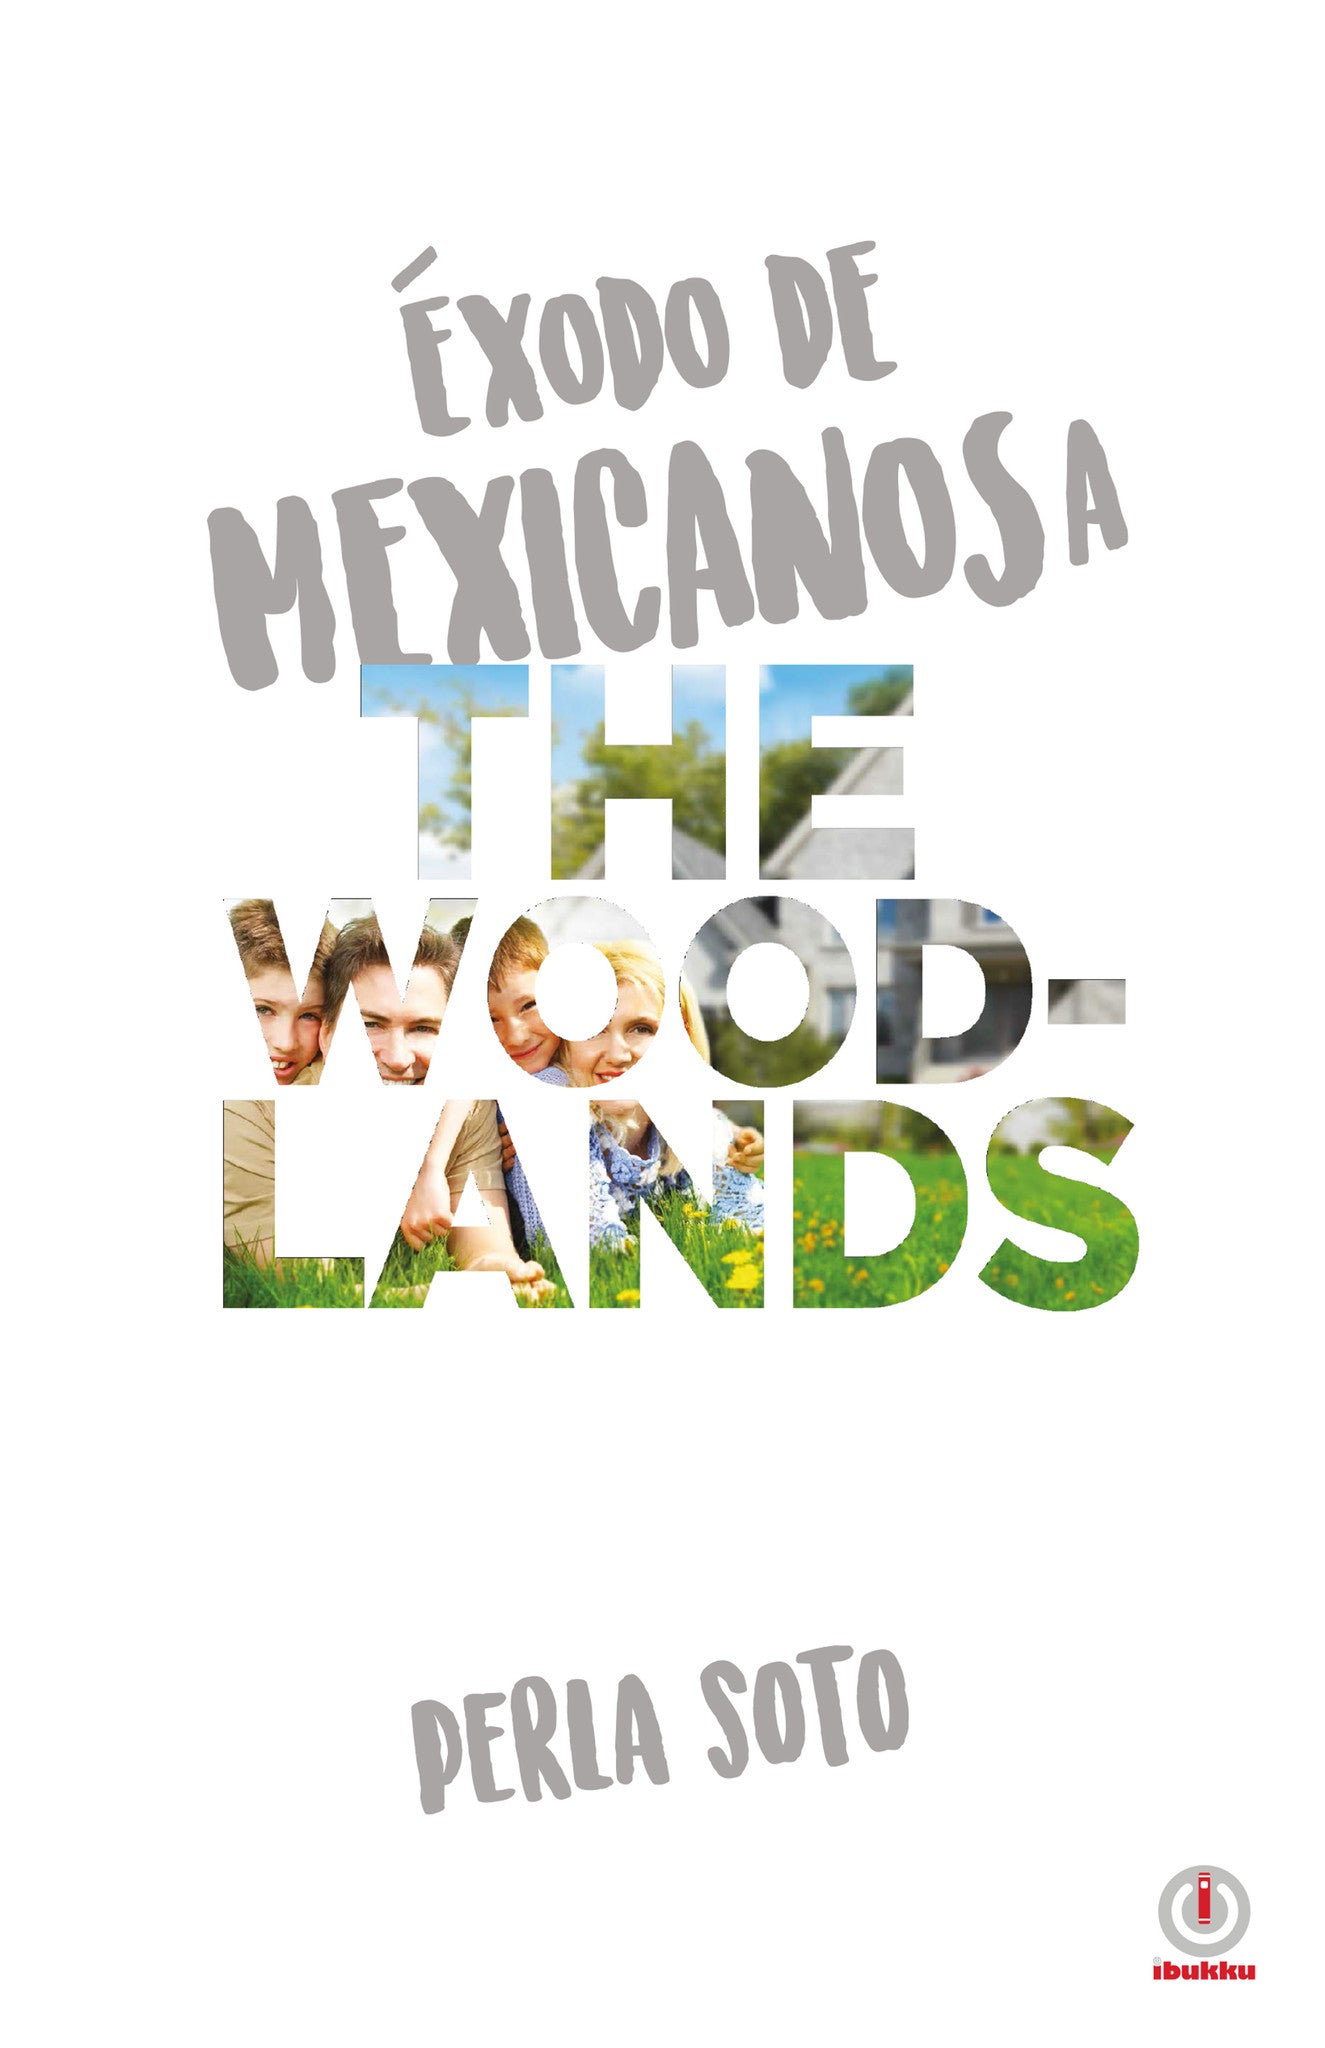 Exodo de mexicanos a The Woodlands (Impreso) - ibukku, LLC